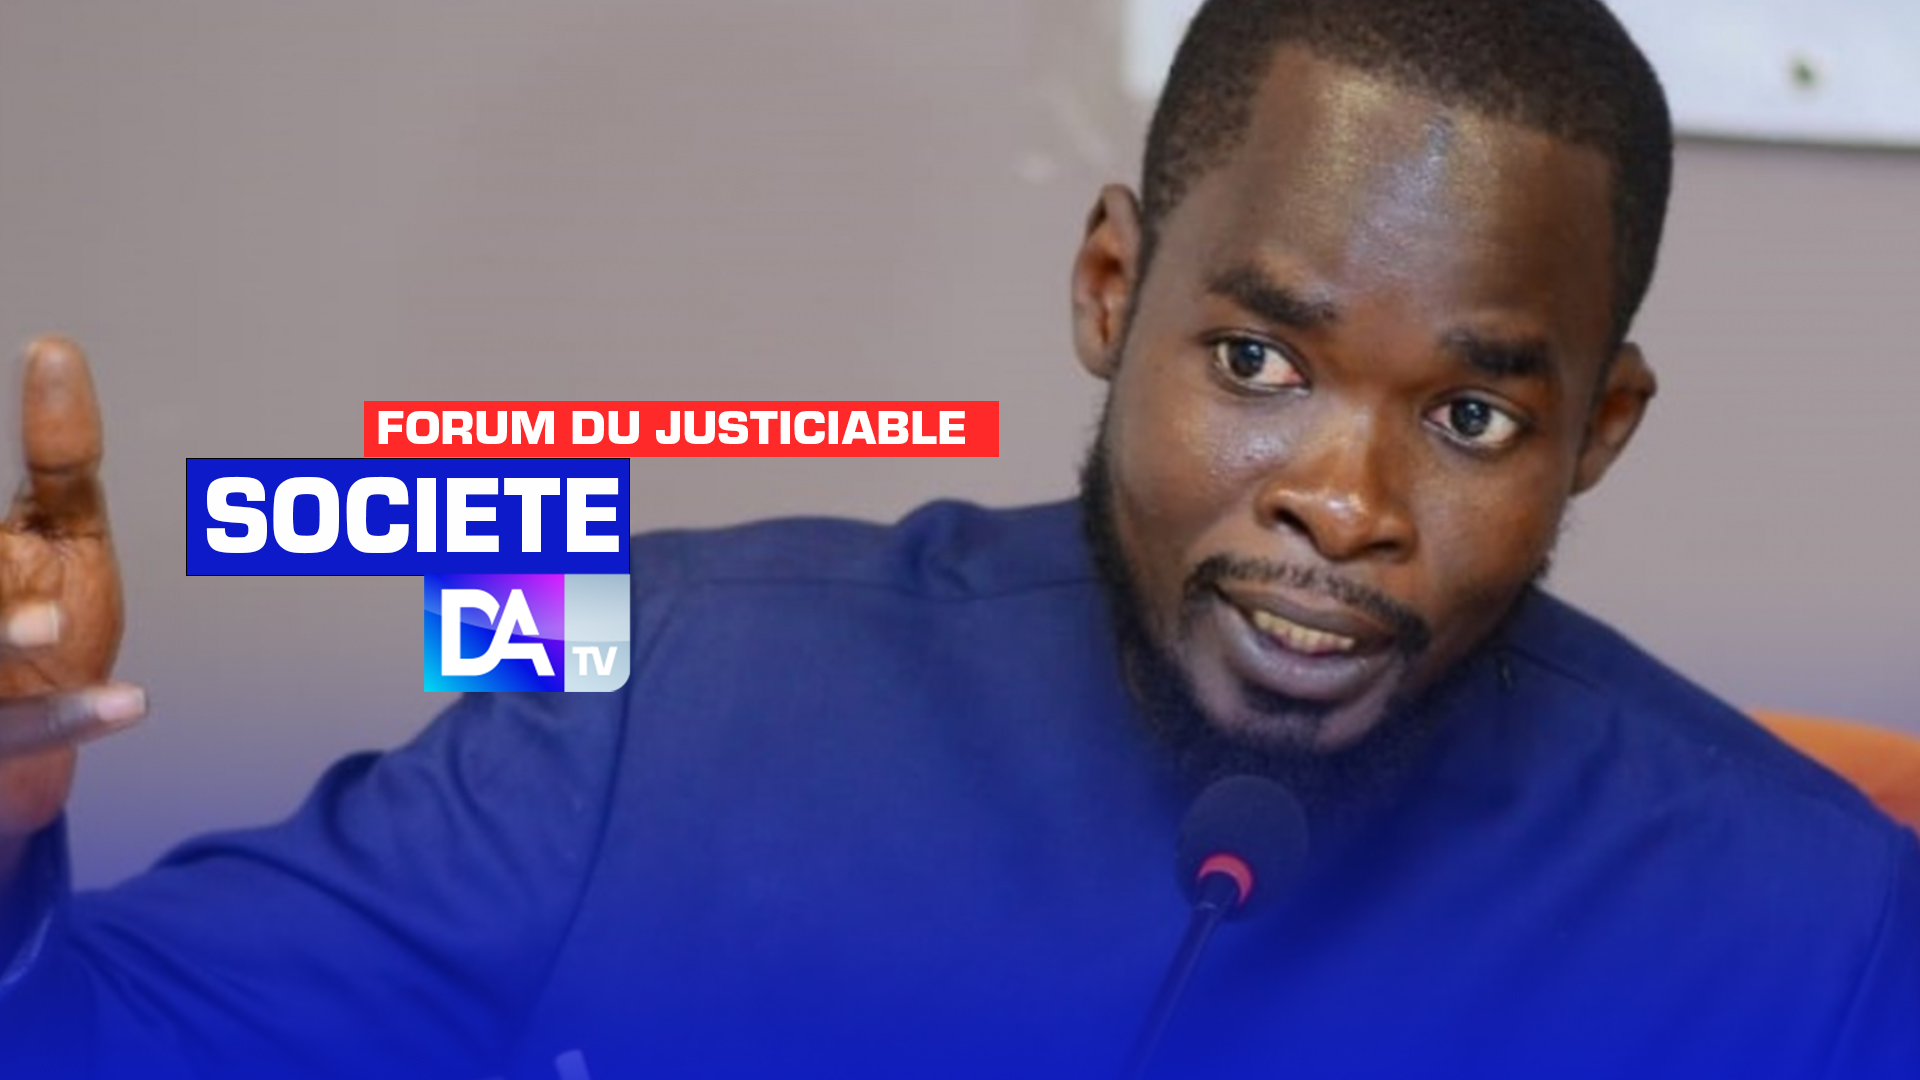 Escalade de la violence verbale dans le champ politique: Le Forum du justiciable invite une partie de la société civile sénégalaise à plus de "courage" et " d'objectivité"